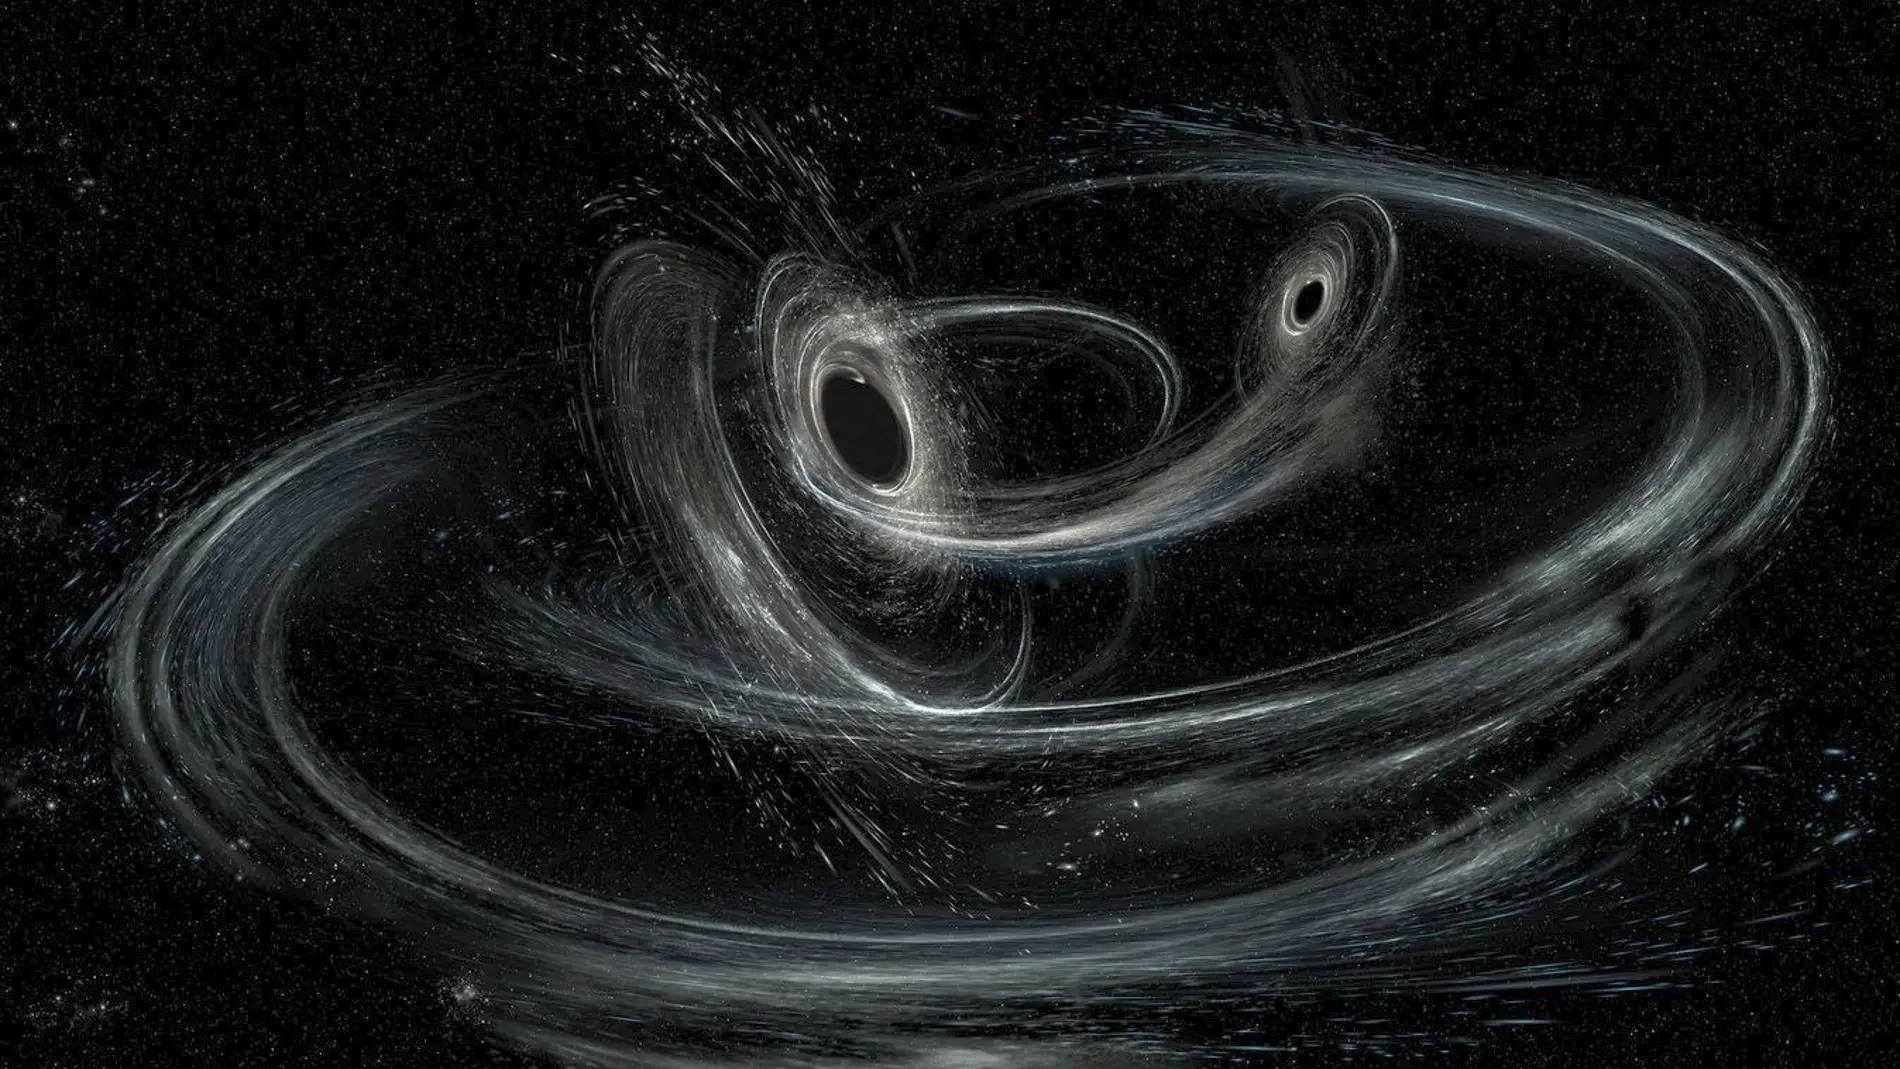 Nuevo catalogo con decenas de nuevas ondas gravitacionales detectadas por Virgo y LIGO